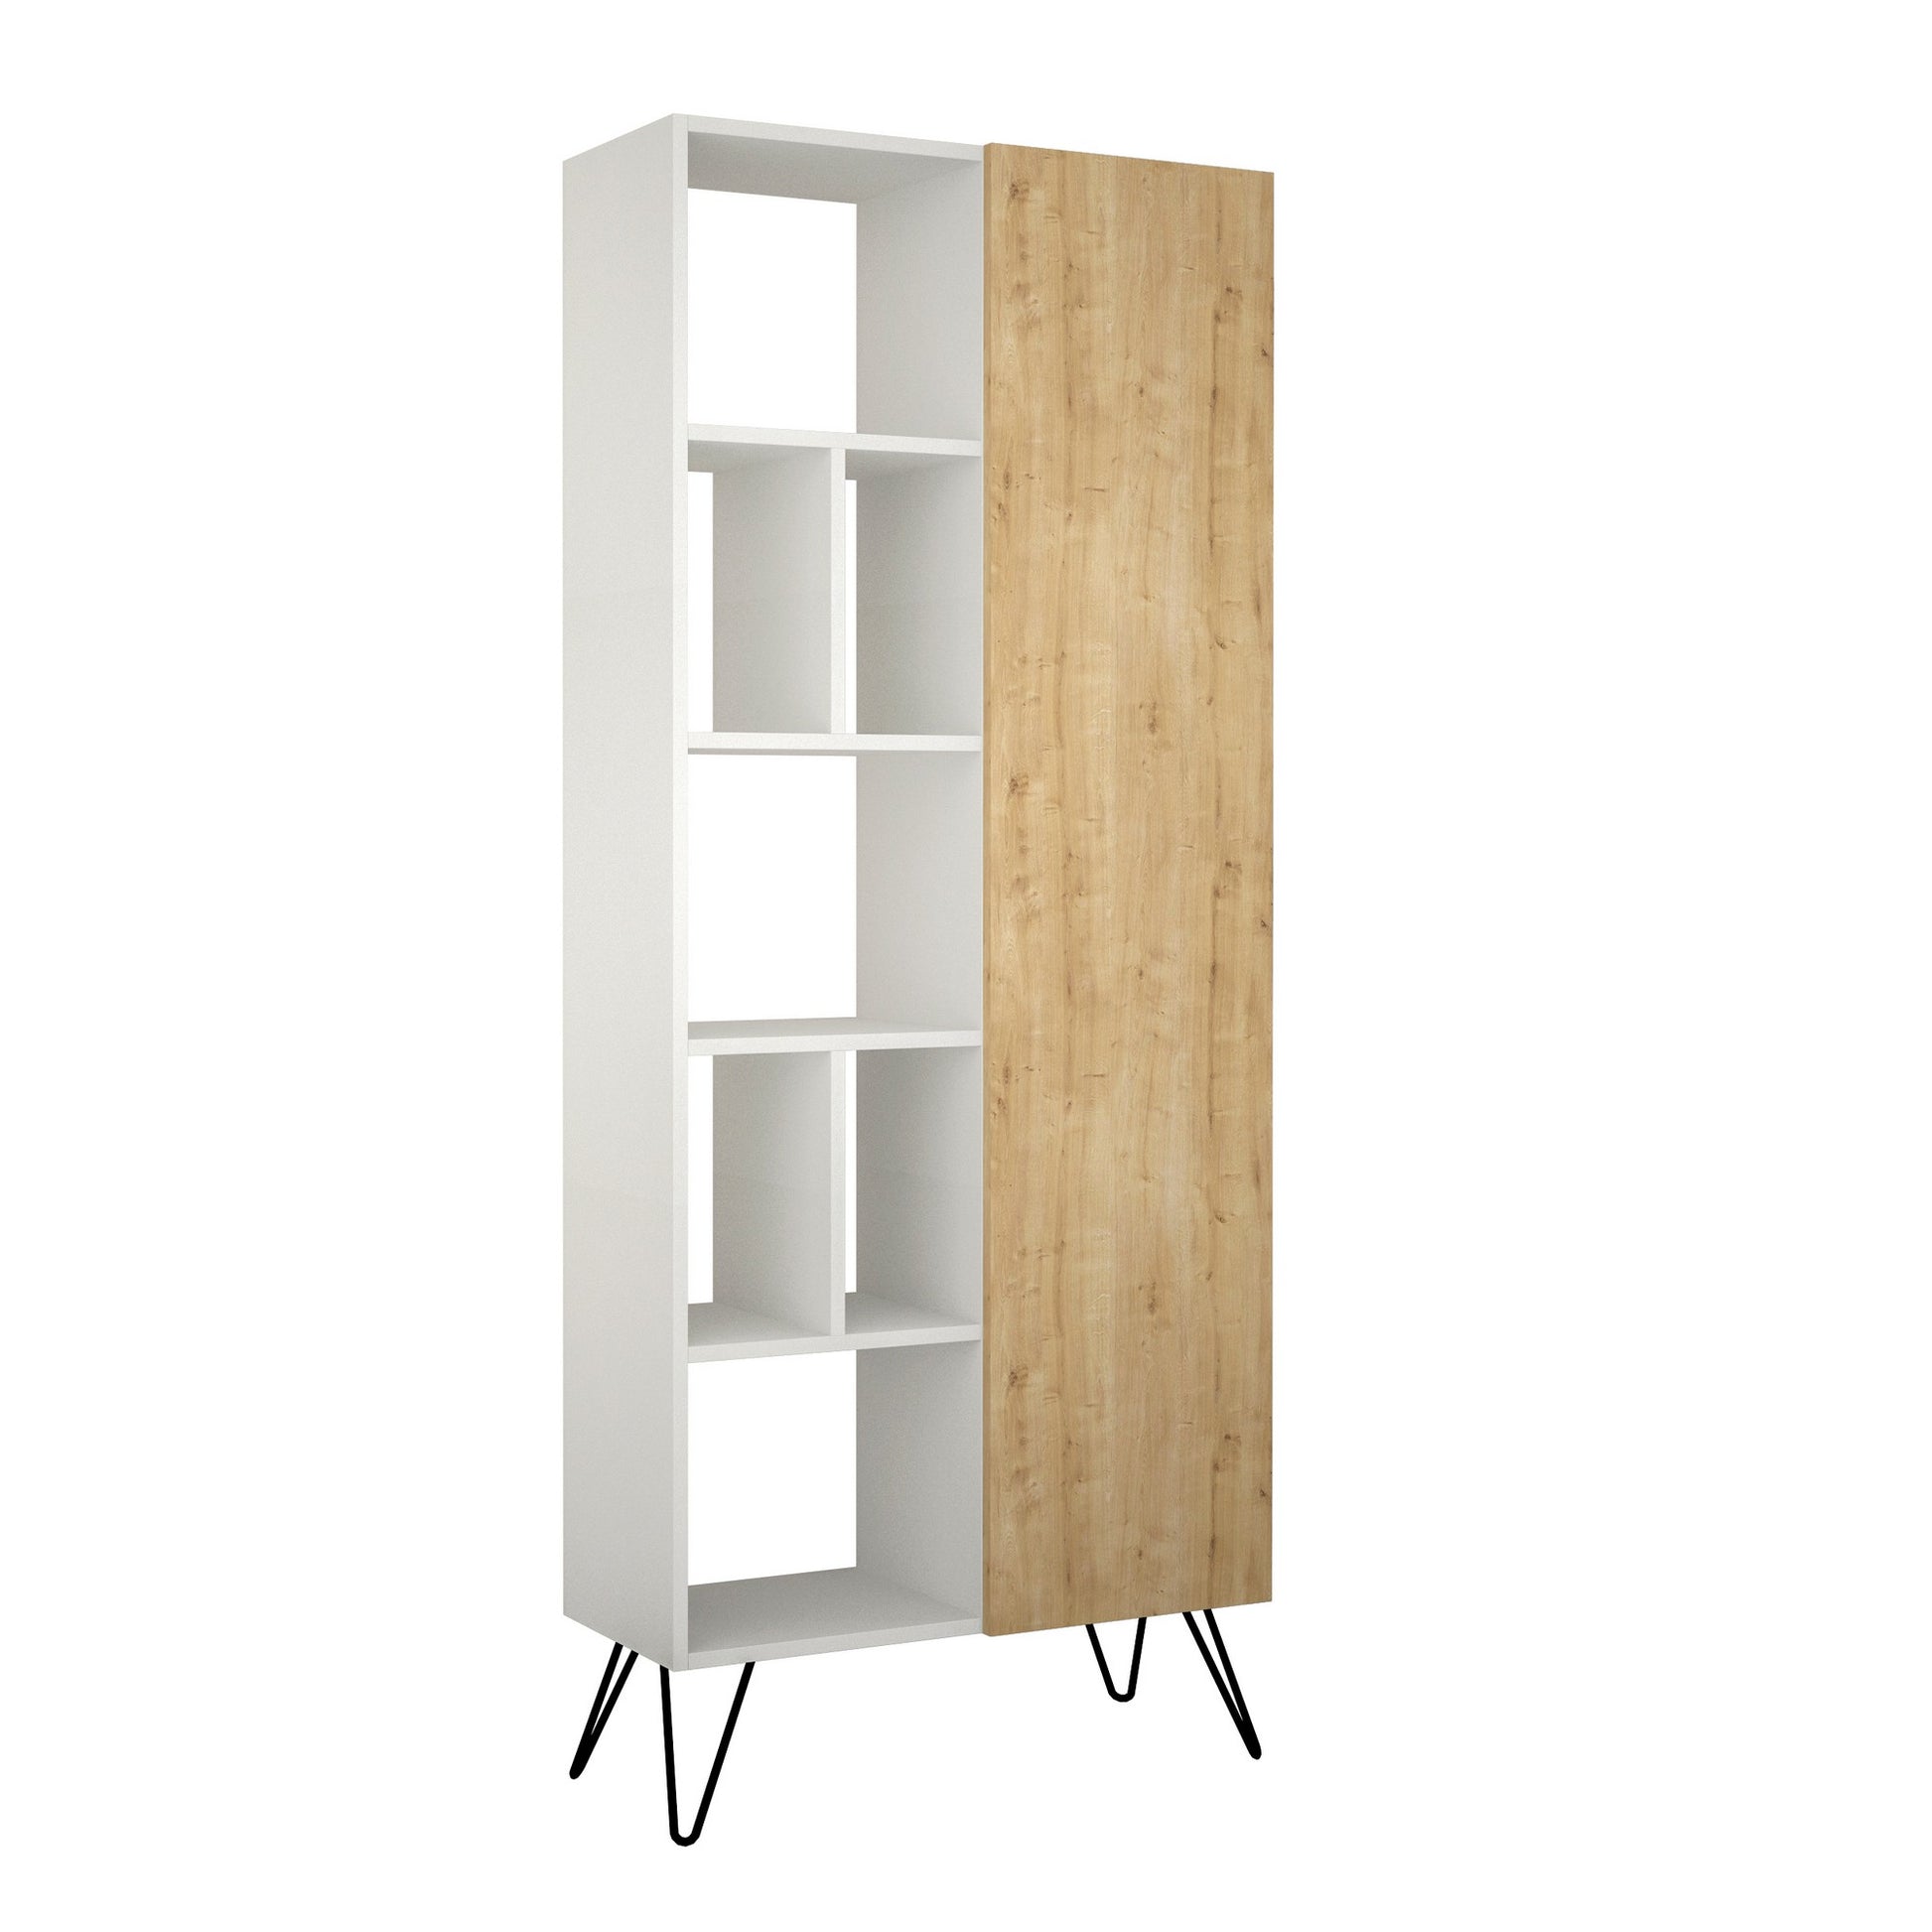 TAKK Jedda Bookcase - White, Oak - NordlyHome.dk